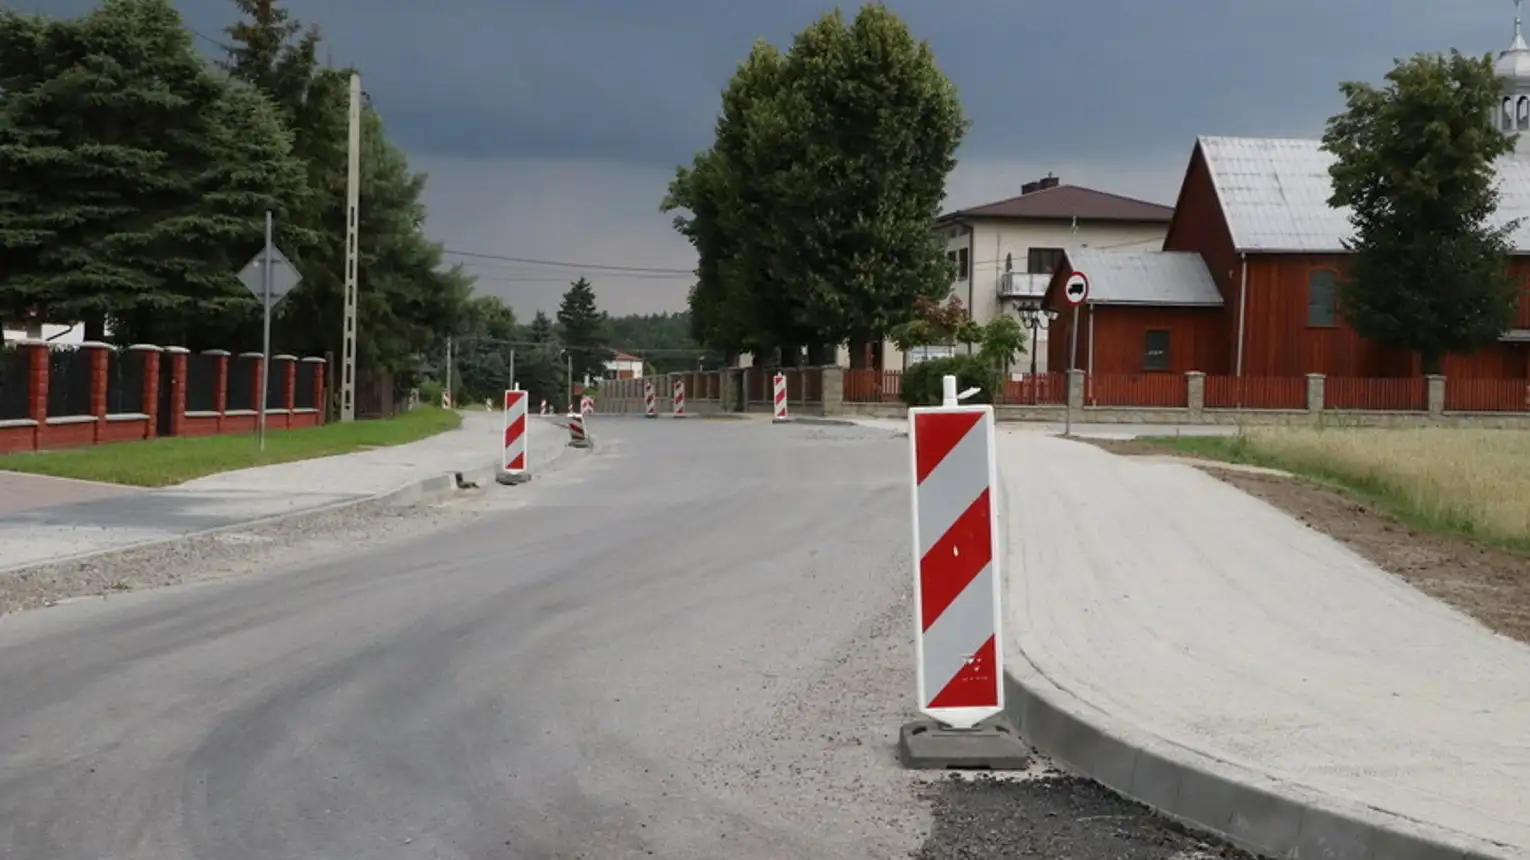 Powiatowy Zarząd Dróg w Mielcu realizuje obecnie przebudowę dróg powiatowych w miejscowościach Złotniki, Chorzelów i Jamy.